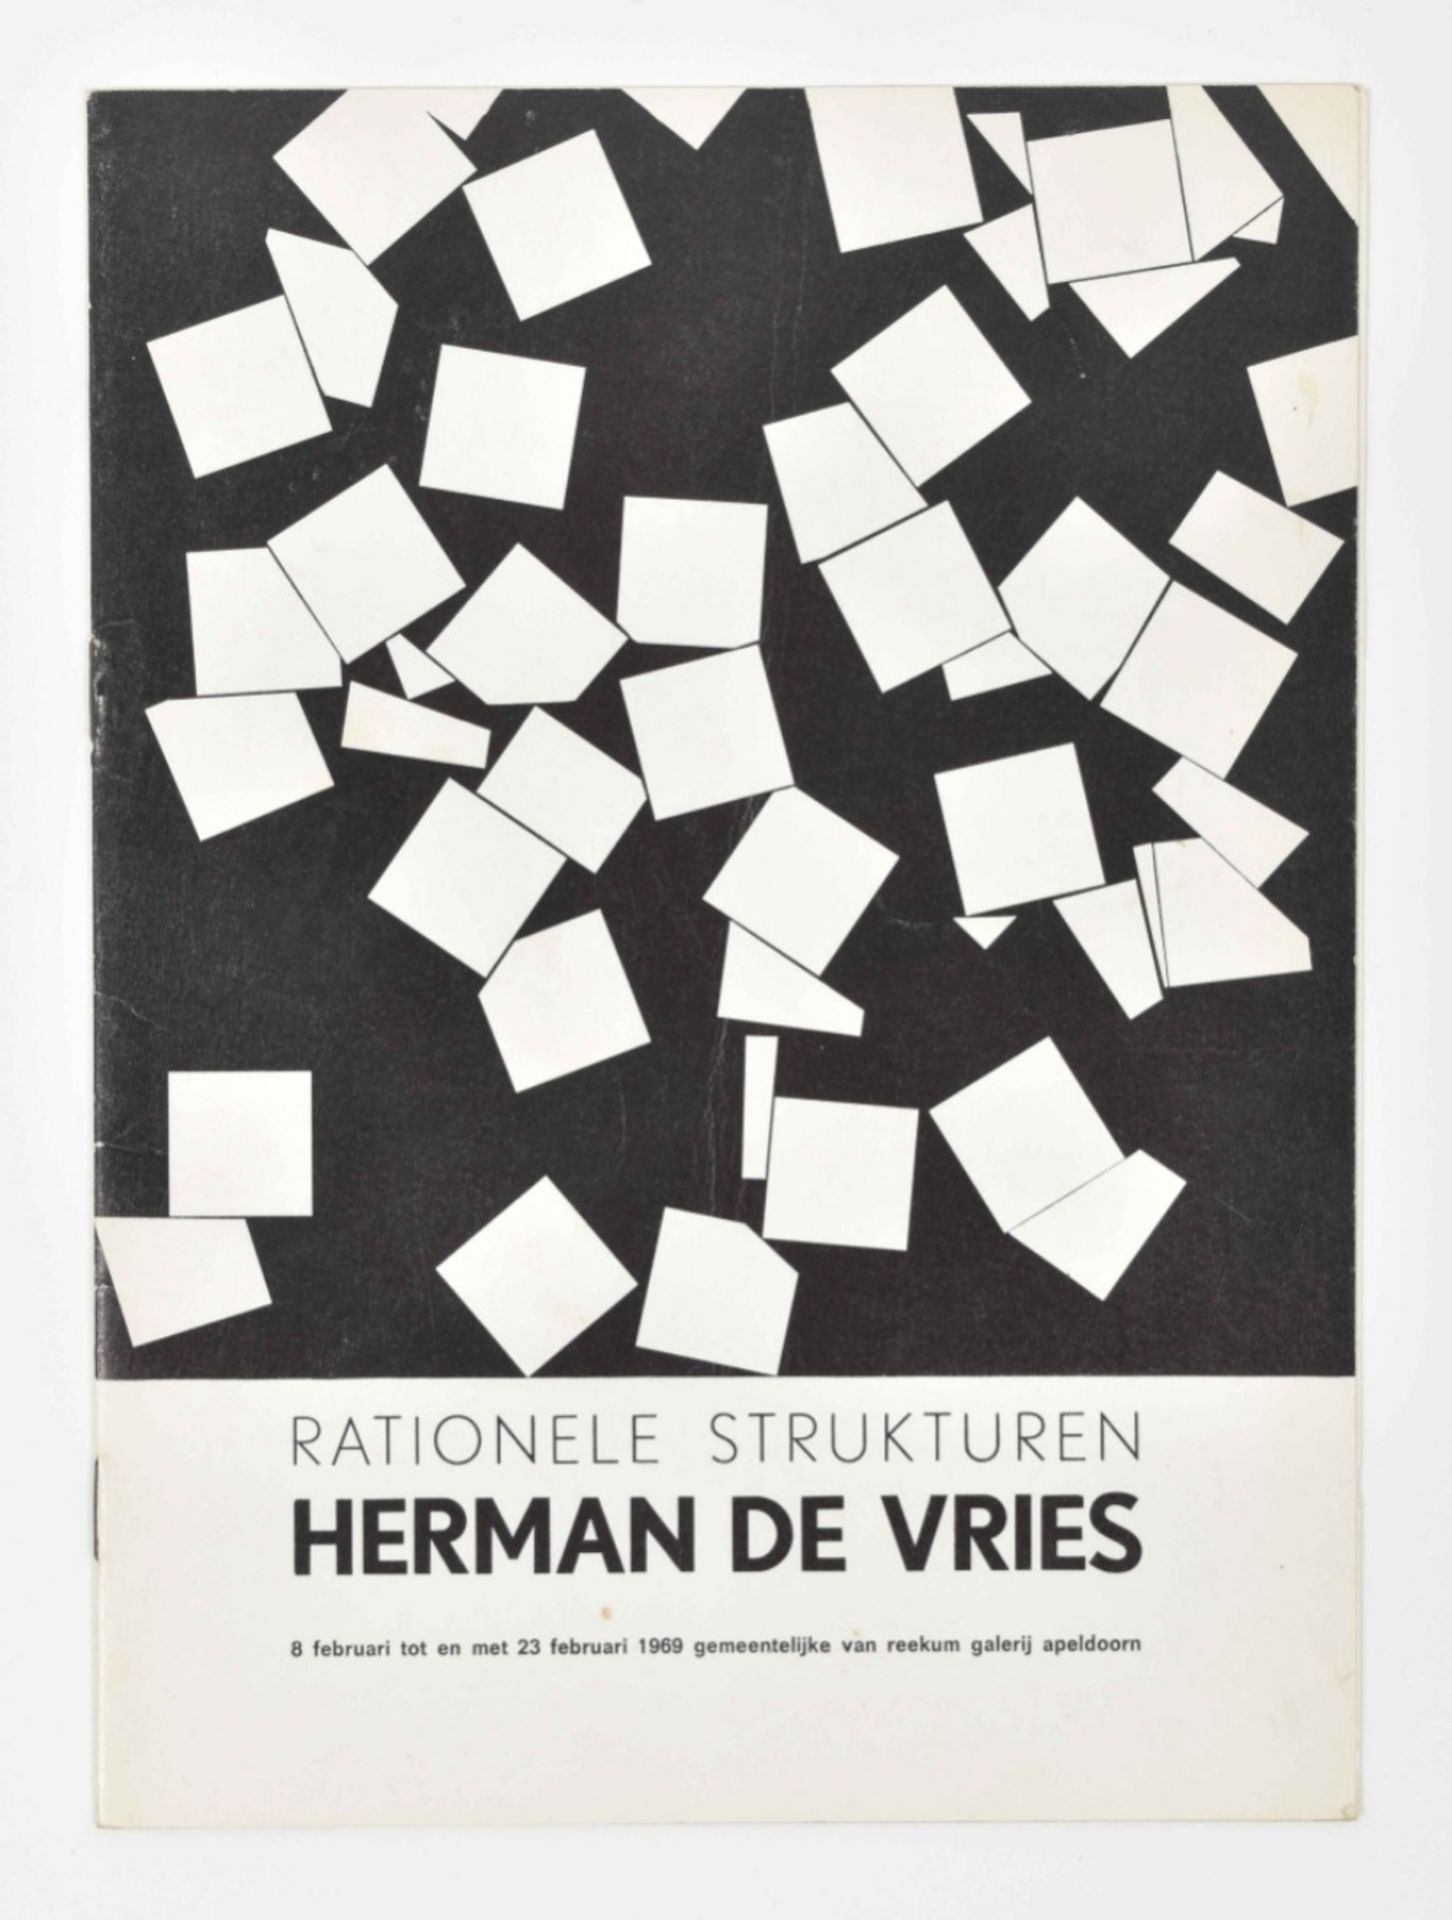 herman de vries, rationele structuren 1969